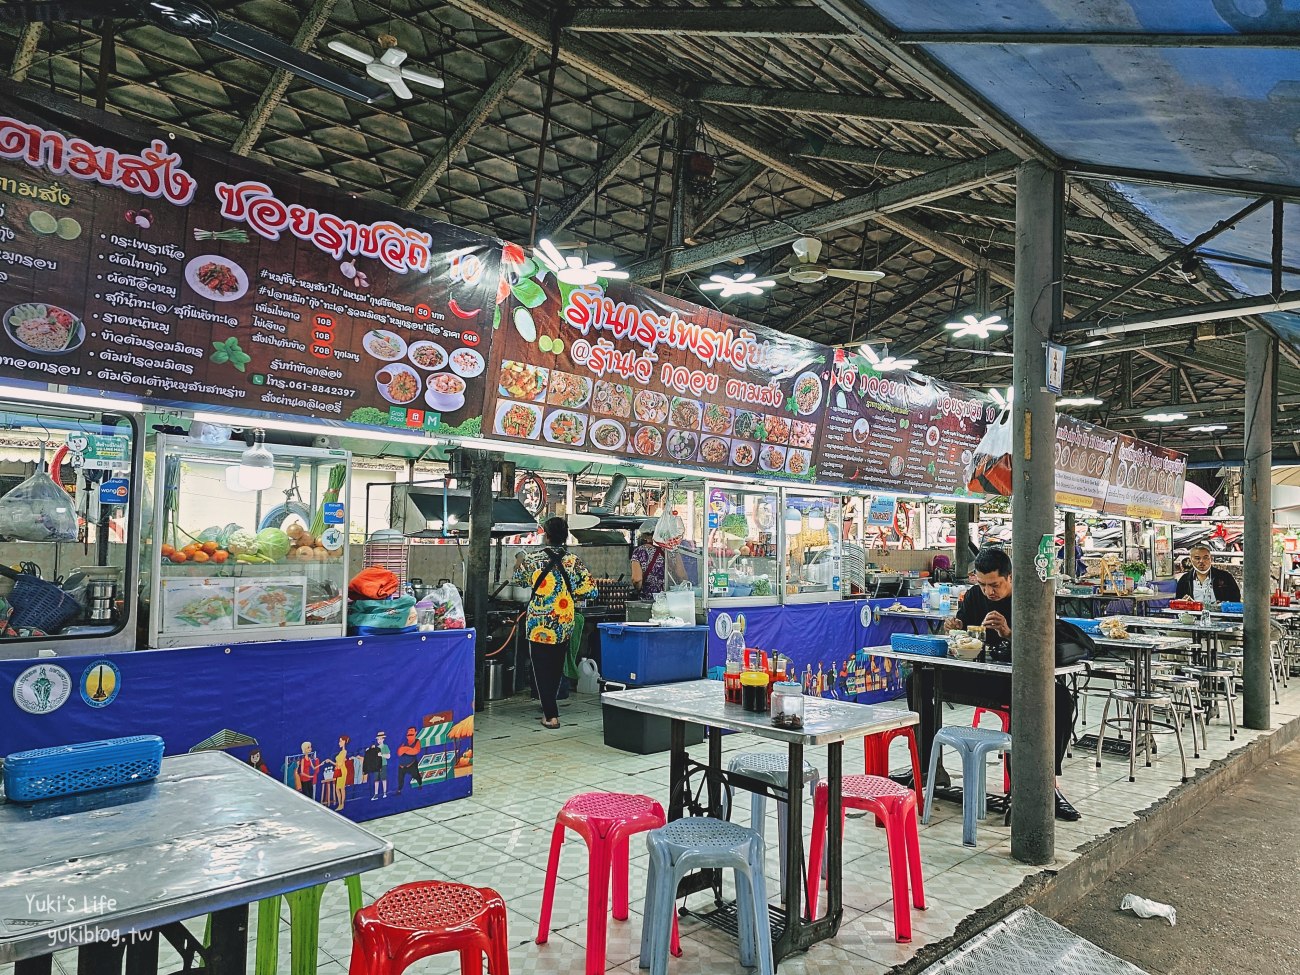 曼谷必吃美食》勝利紀念碑站-船麵一條街「Baan Kuay Tiew Ruathong」交通價格心得～ - yukiblog.tw